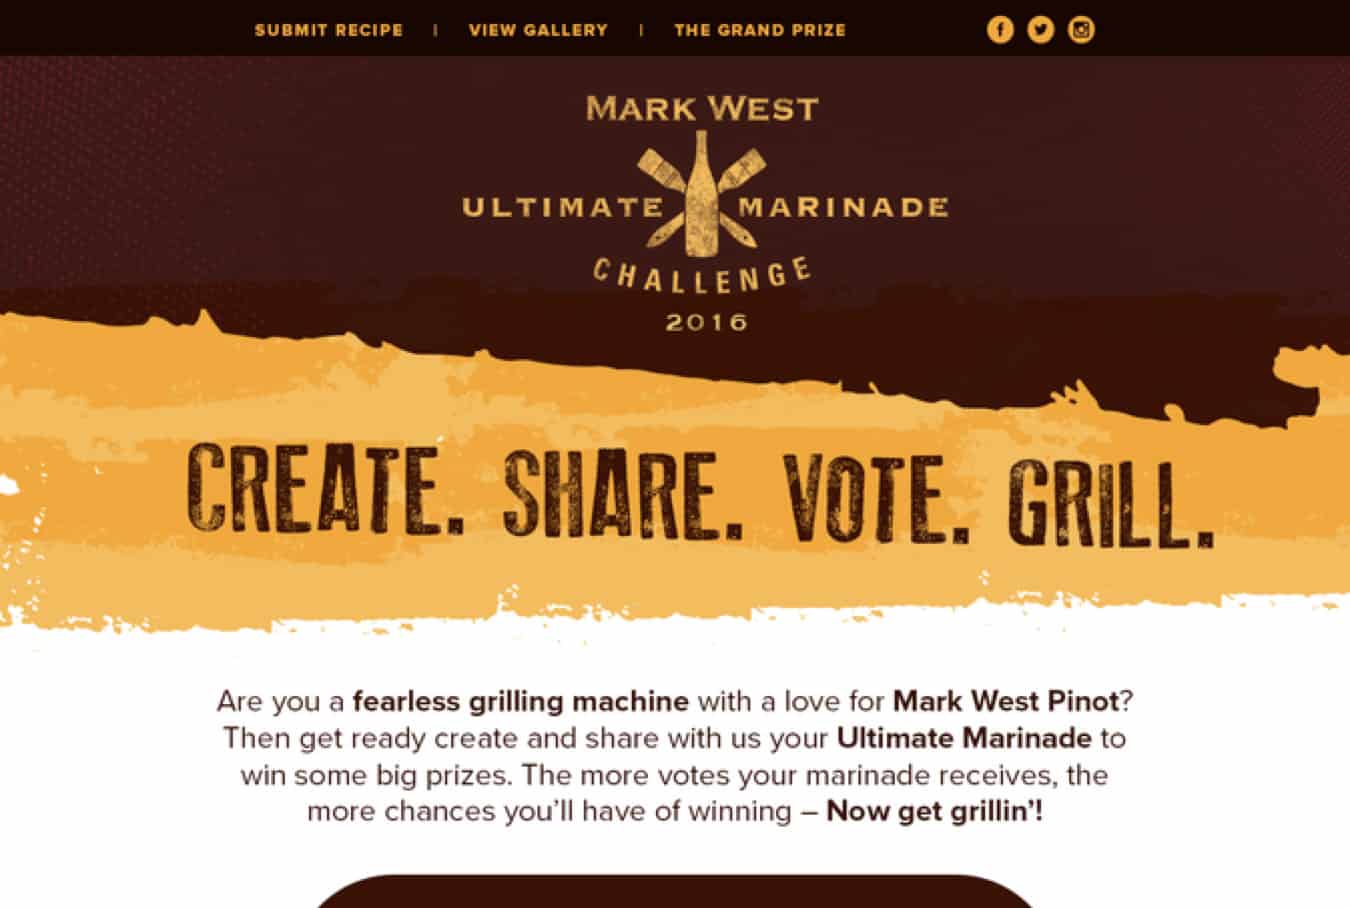 Mark West Marinade Challenge 